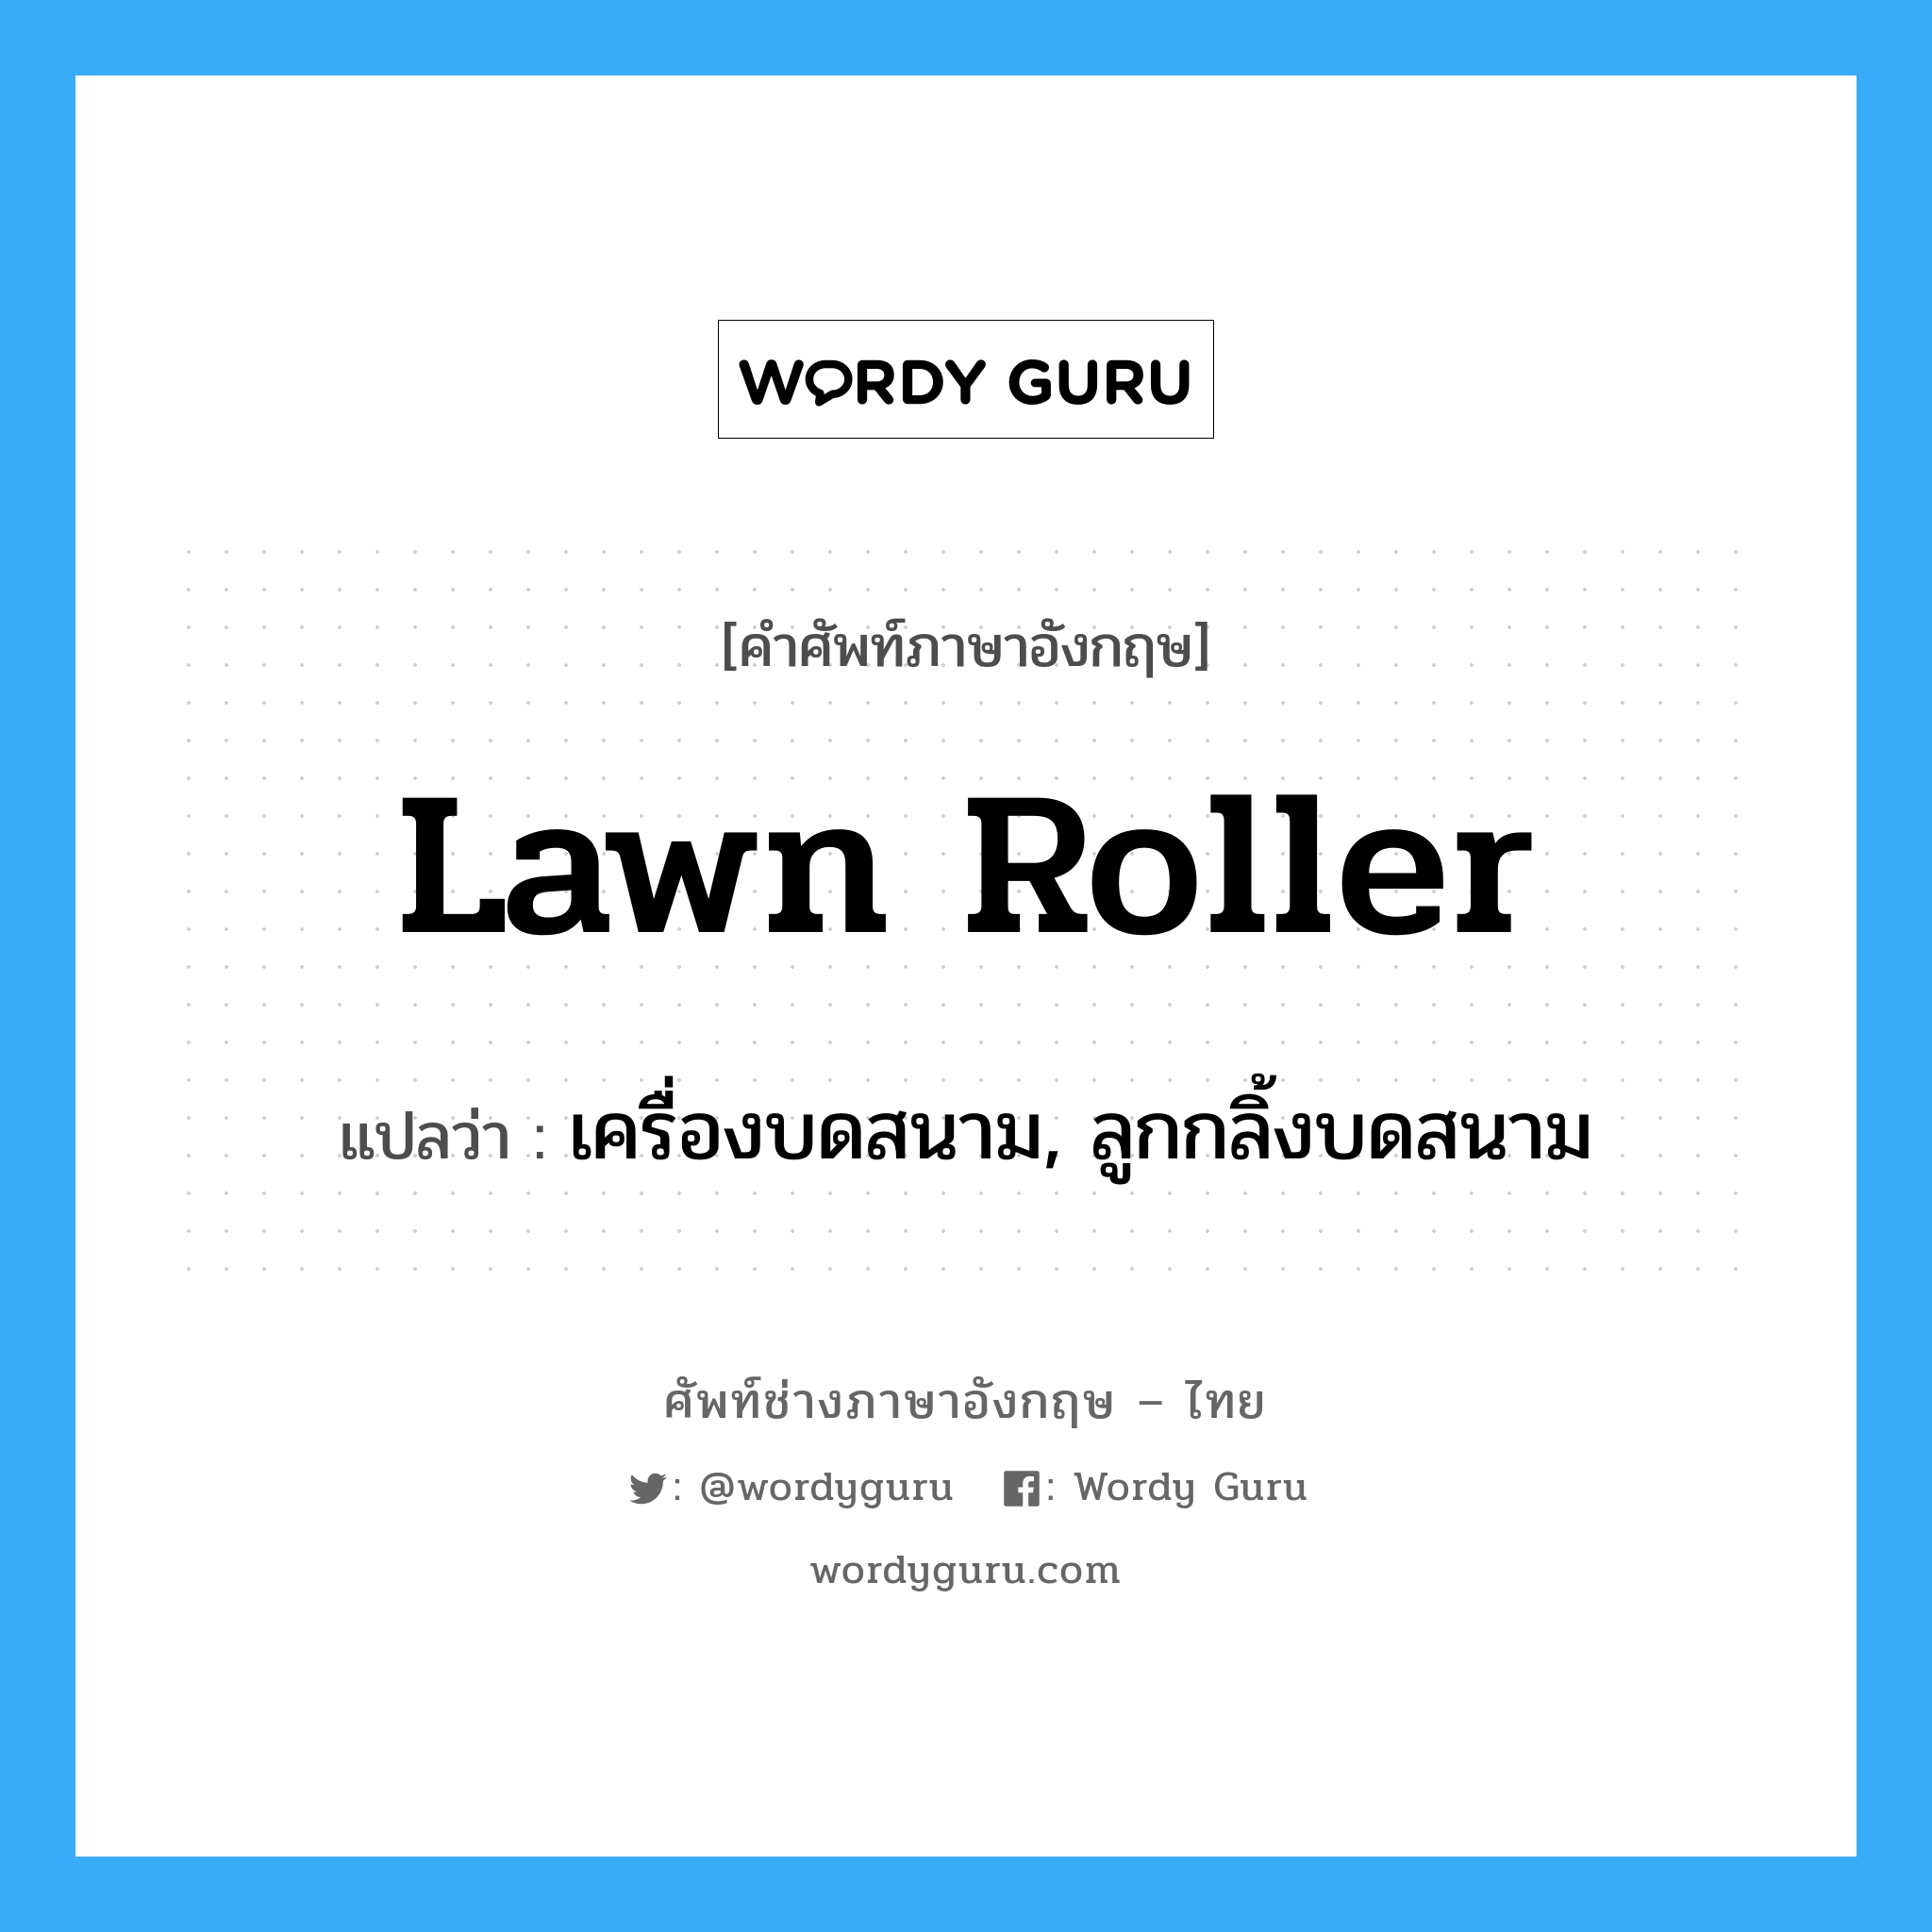 lawn roller แปลว่า?, คำศัพท์ช่างภาษาอังกฤษ - ไทย lawn roller คำศัพท์ภาษาอังกฤษ lawn roller แปลว่า เครื่องบดสนาม, ลูกกลิ้งบดสนาม